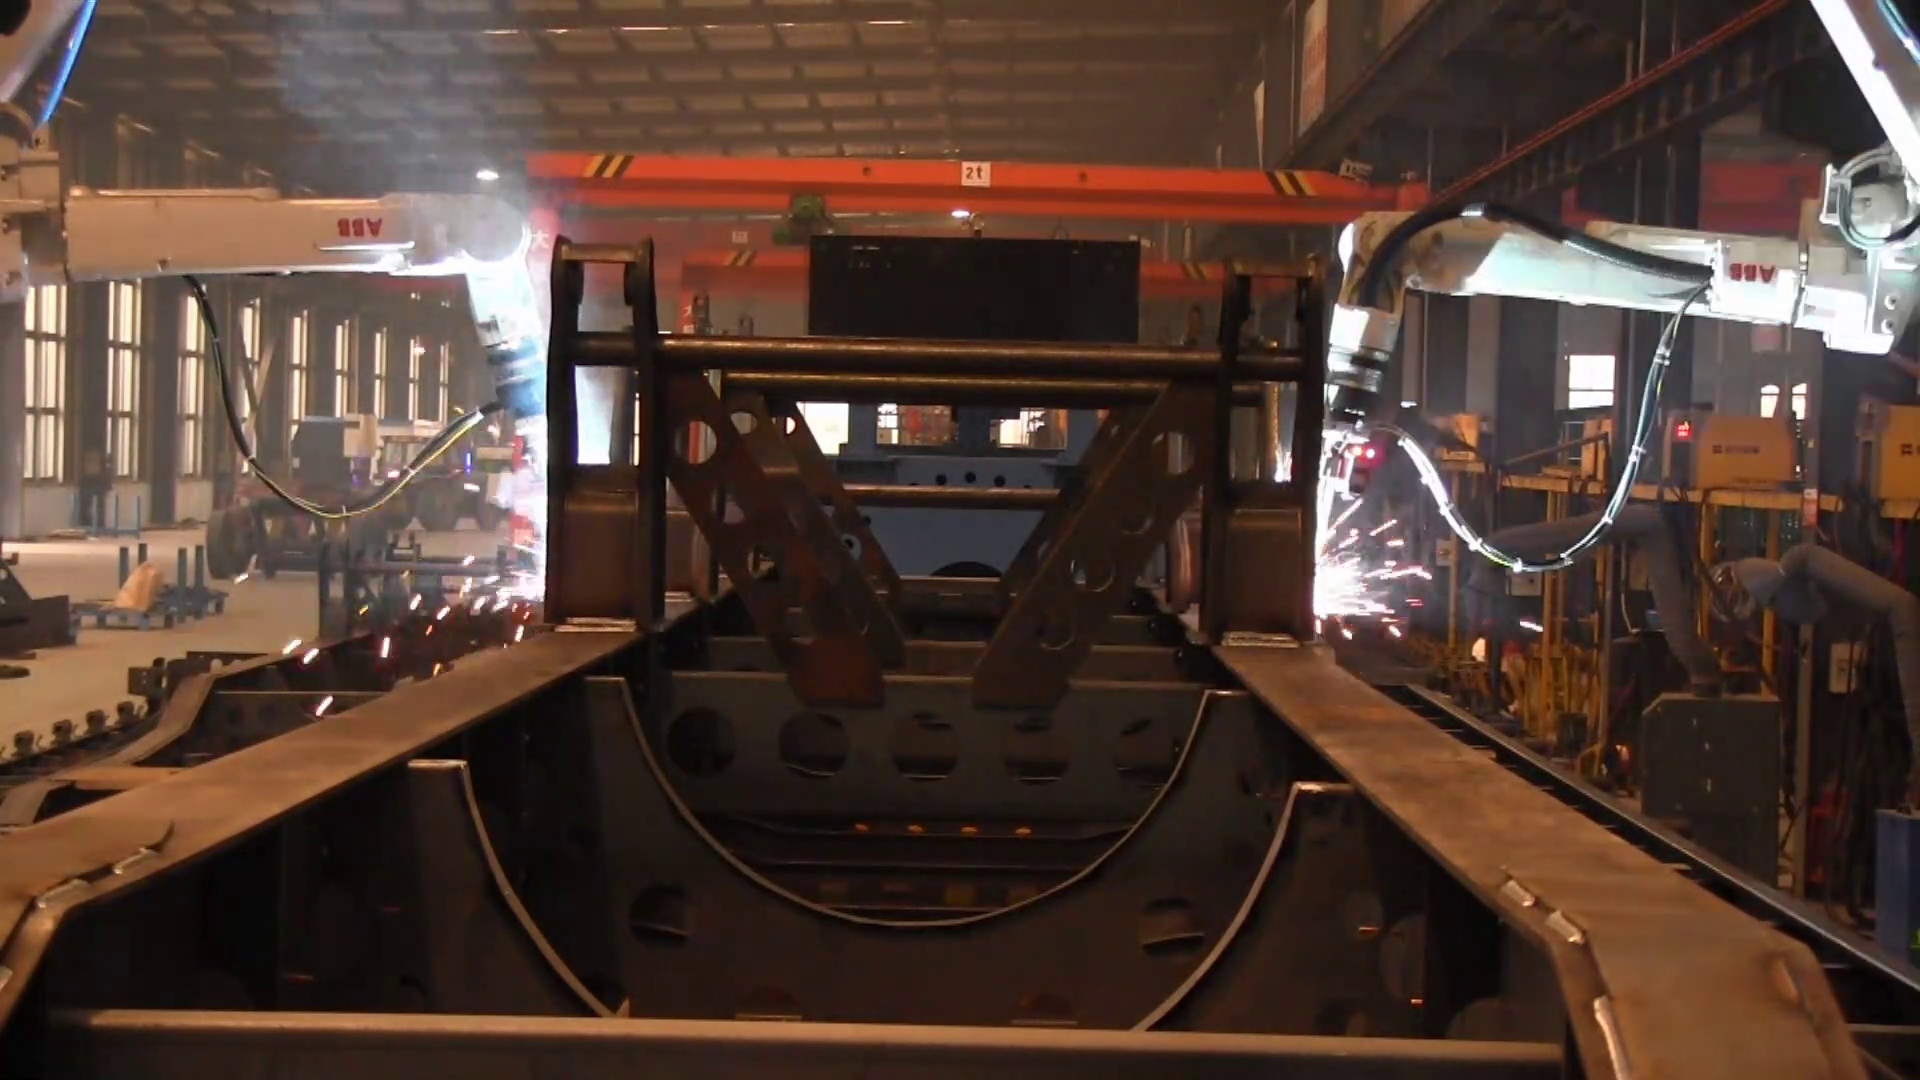 The frame welding robot